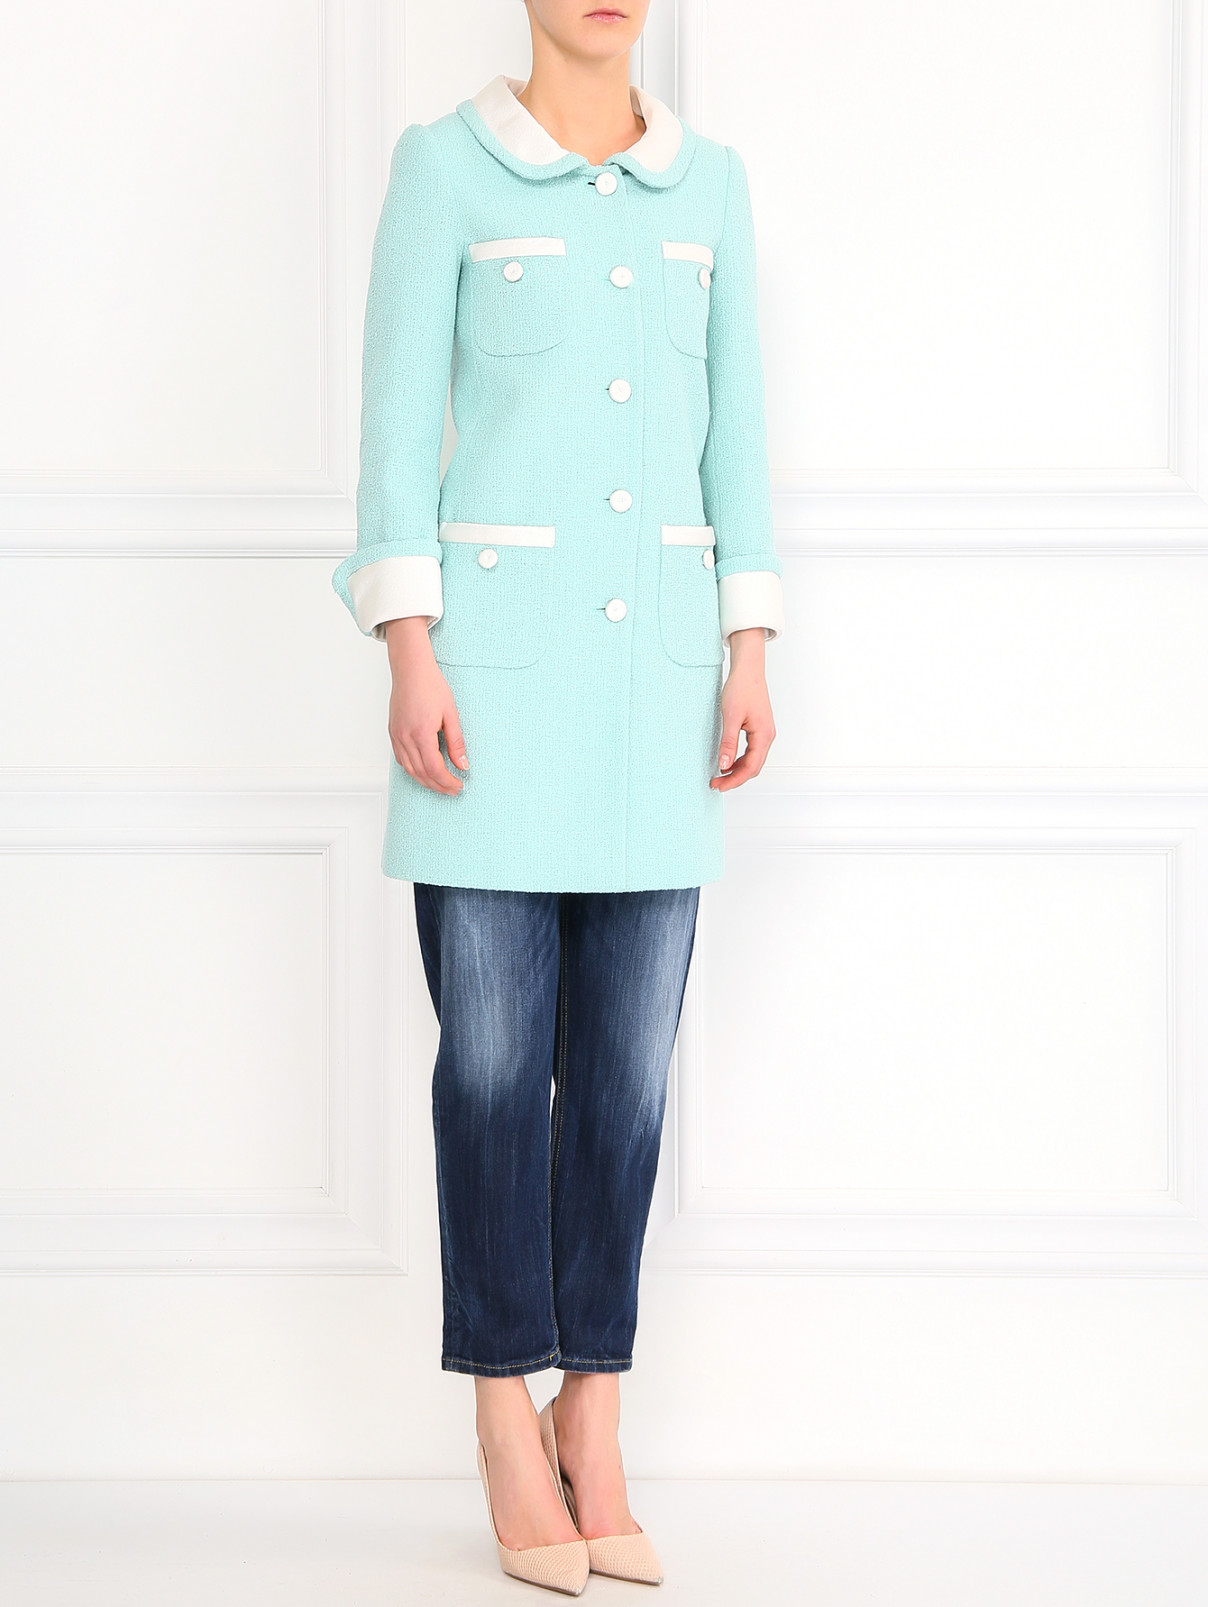 Пальто из хлопка Moschino Couture  –  Модель Общий вид  – Цвет:  Синий